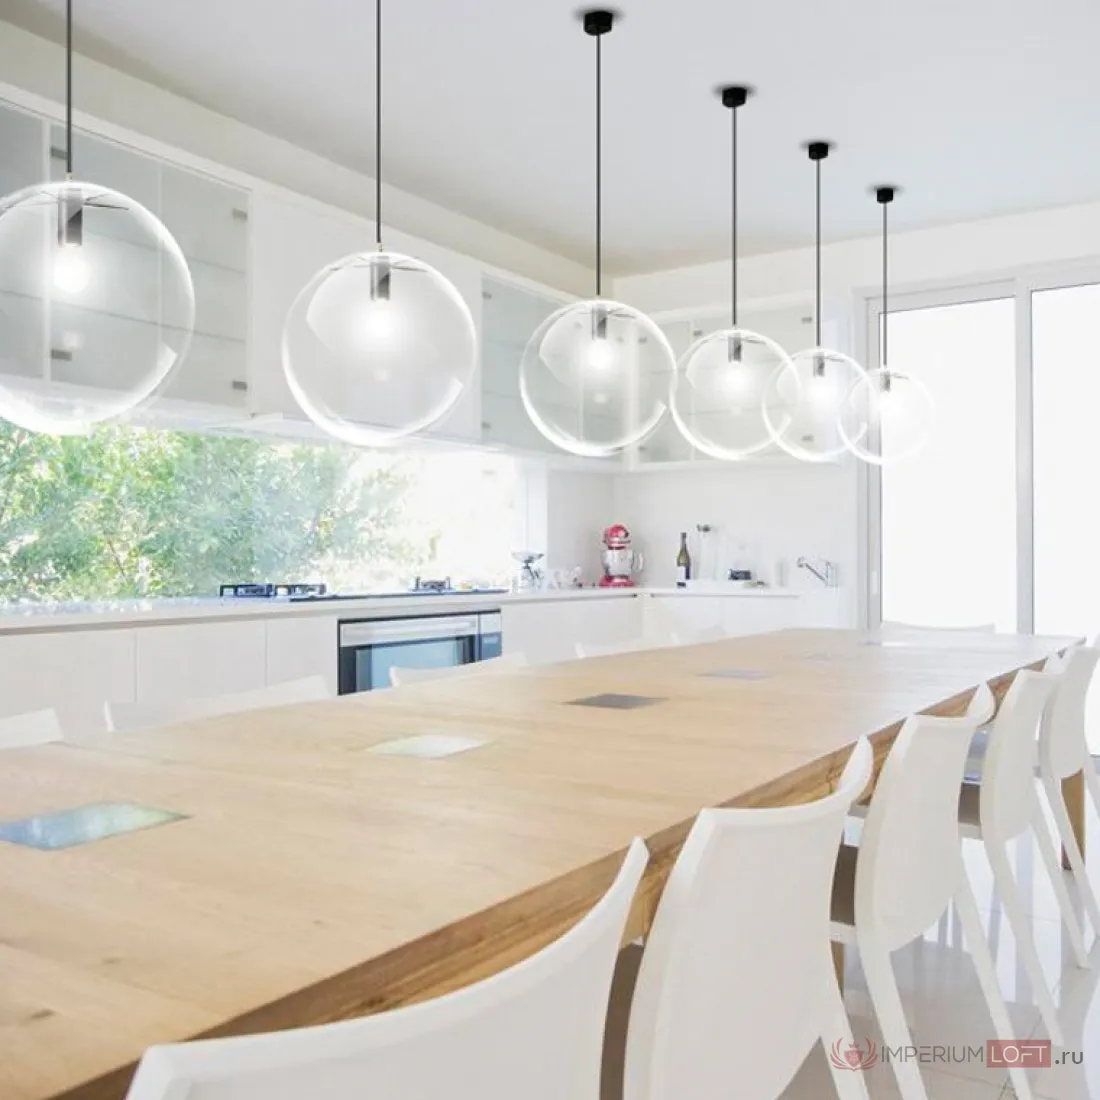 светильники для кухни подвесные над столом в интерьере кухни